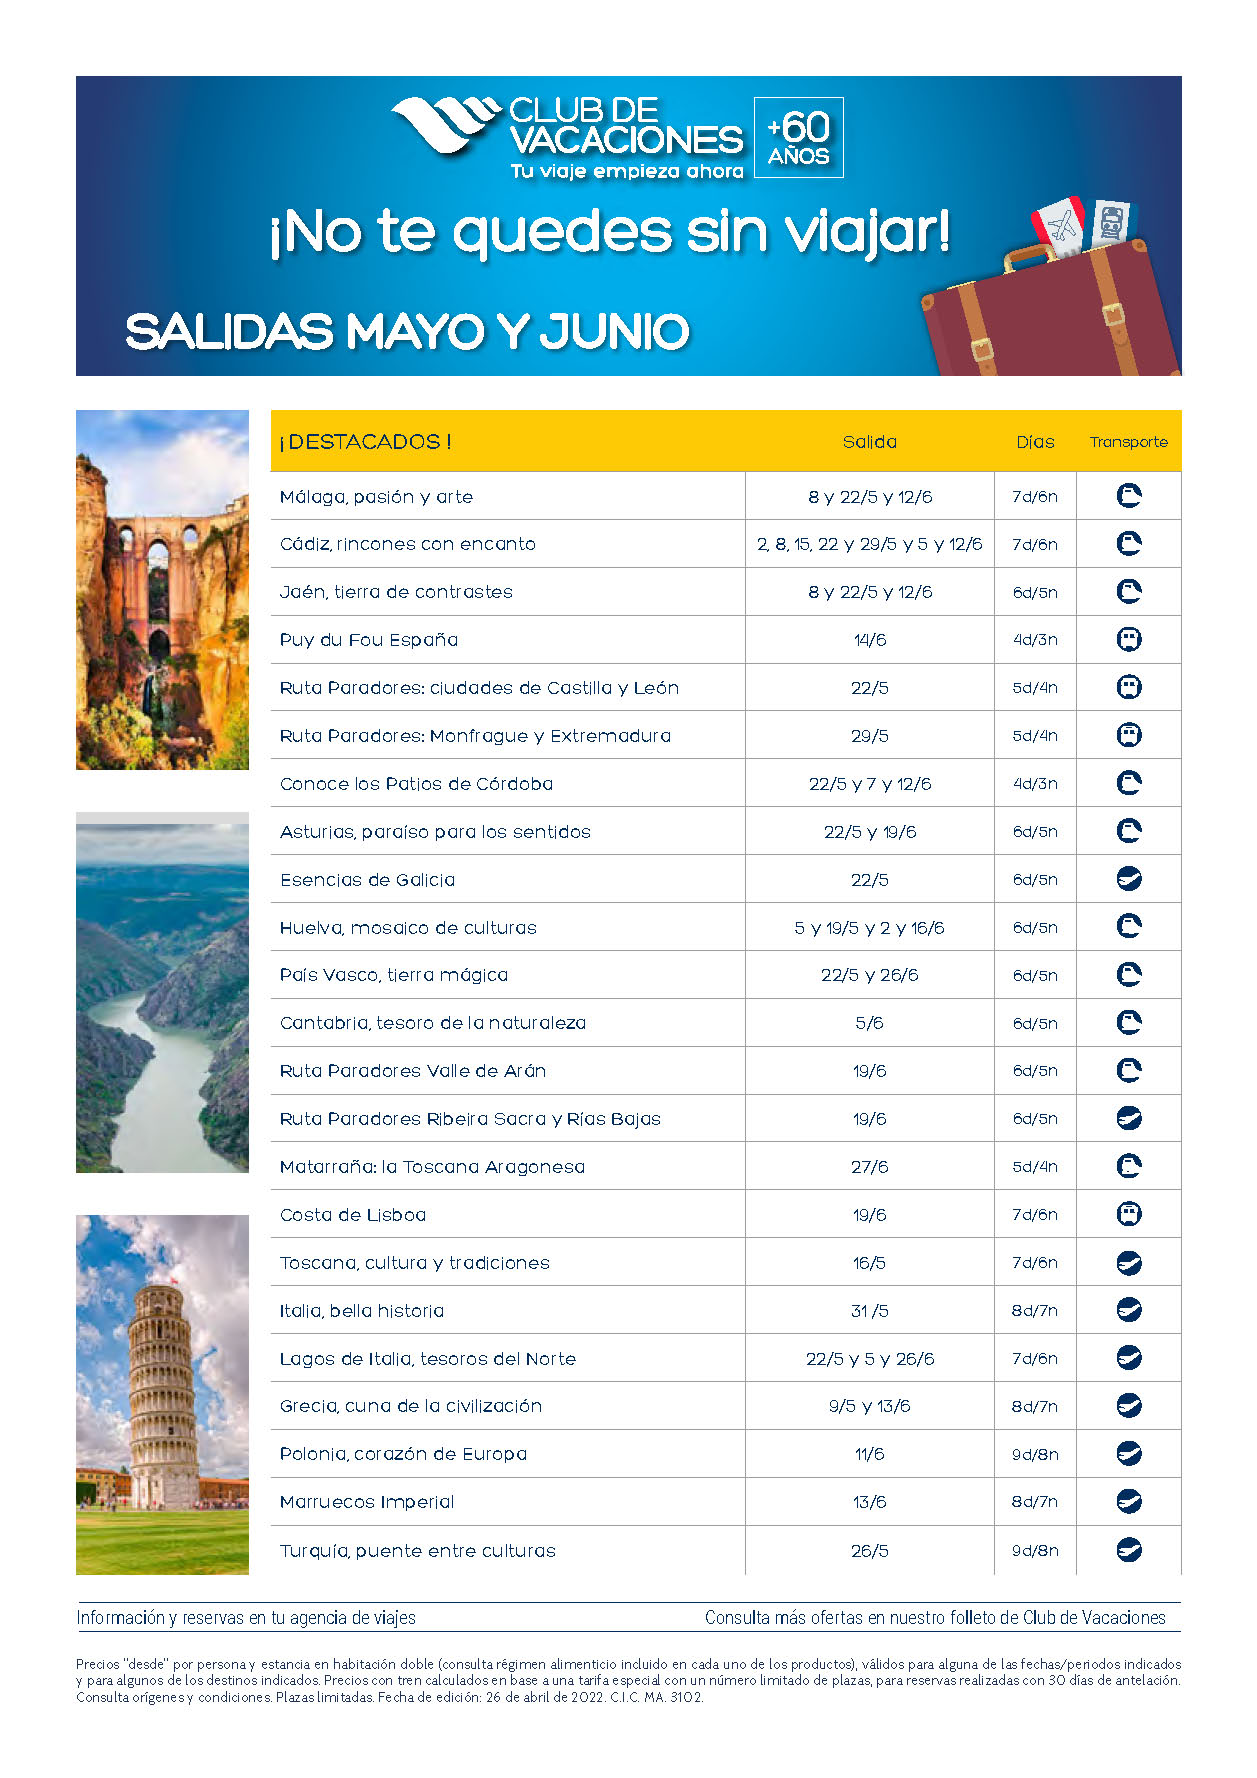 Ofertas Club de Vacaciones Mayores de 60 Circuitos por España y Europa salidas Mayo y Junio 2022